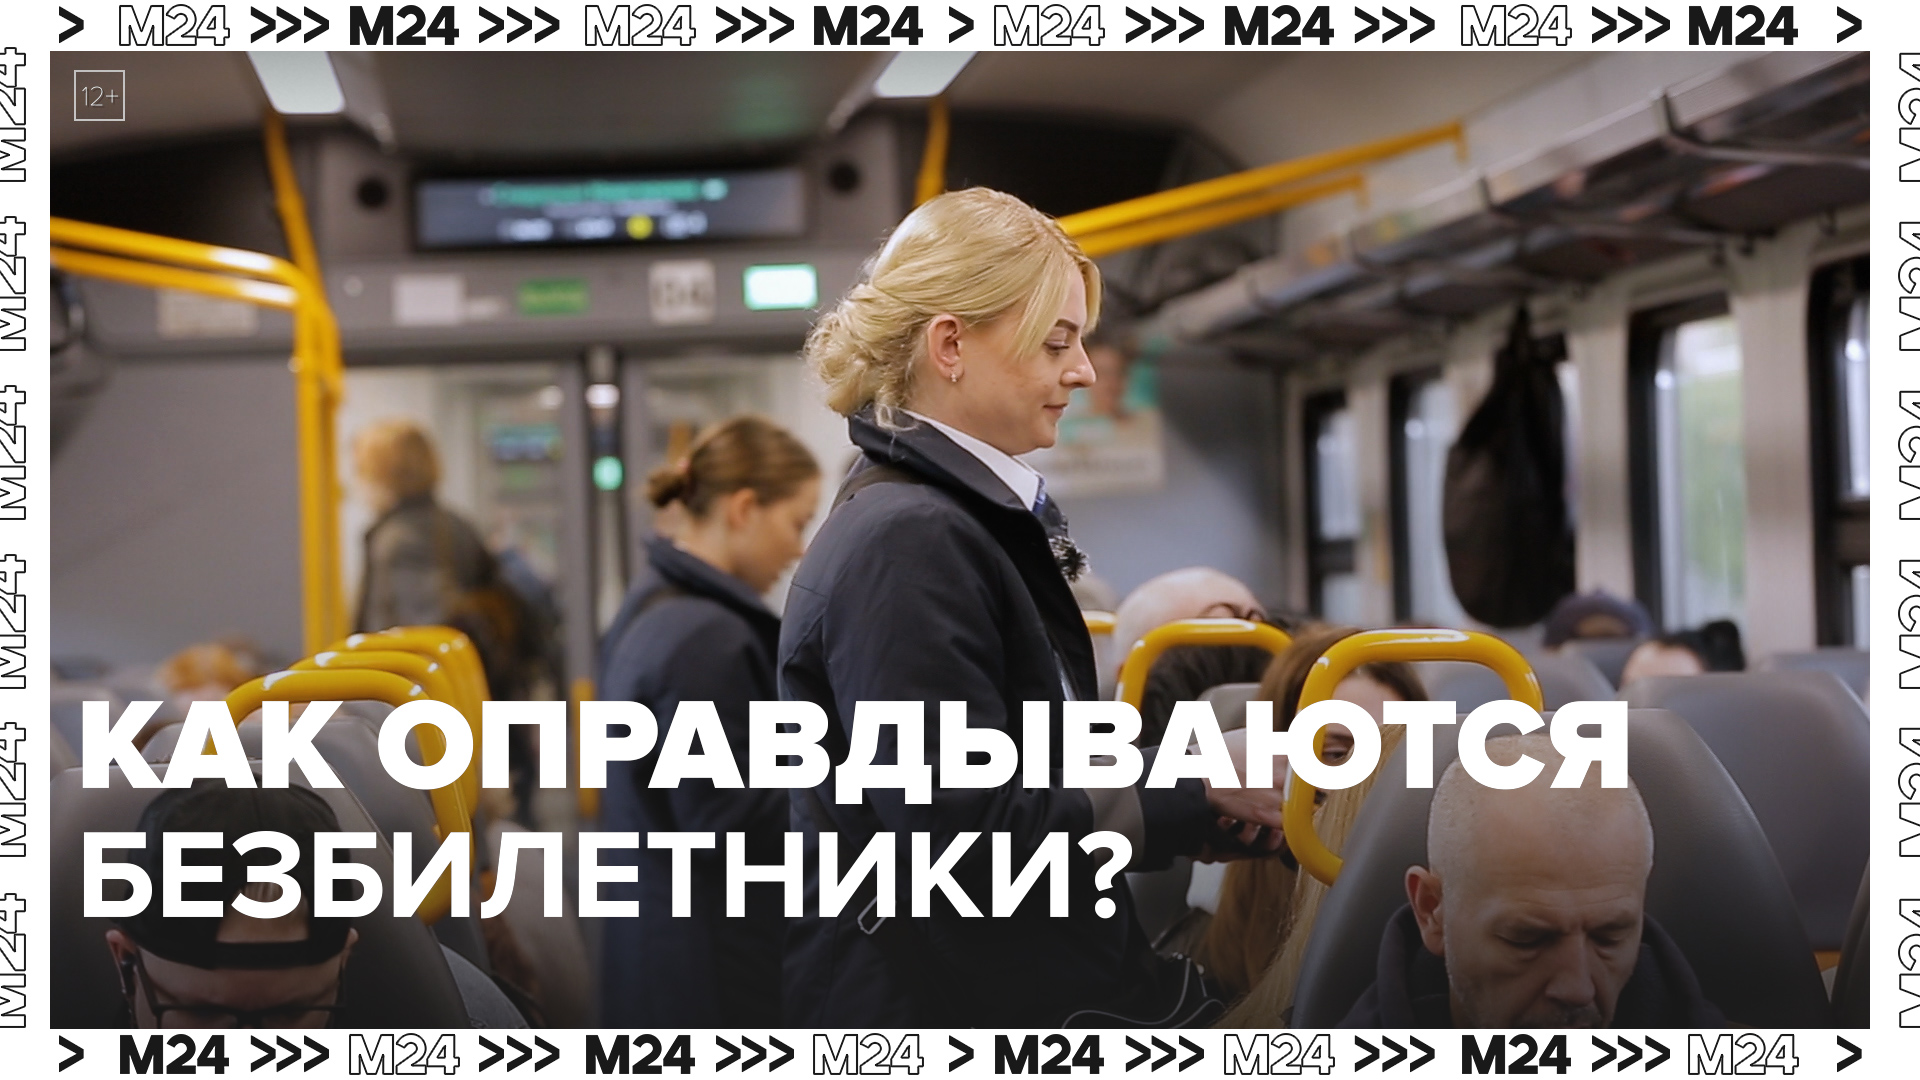 Как ловят безбилетников в транспорте? — Москва24|Контент